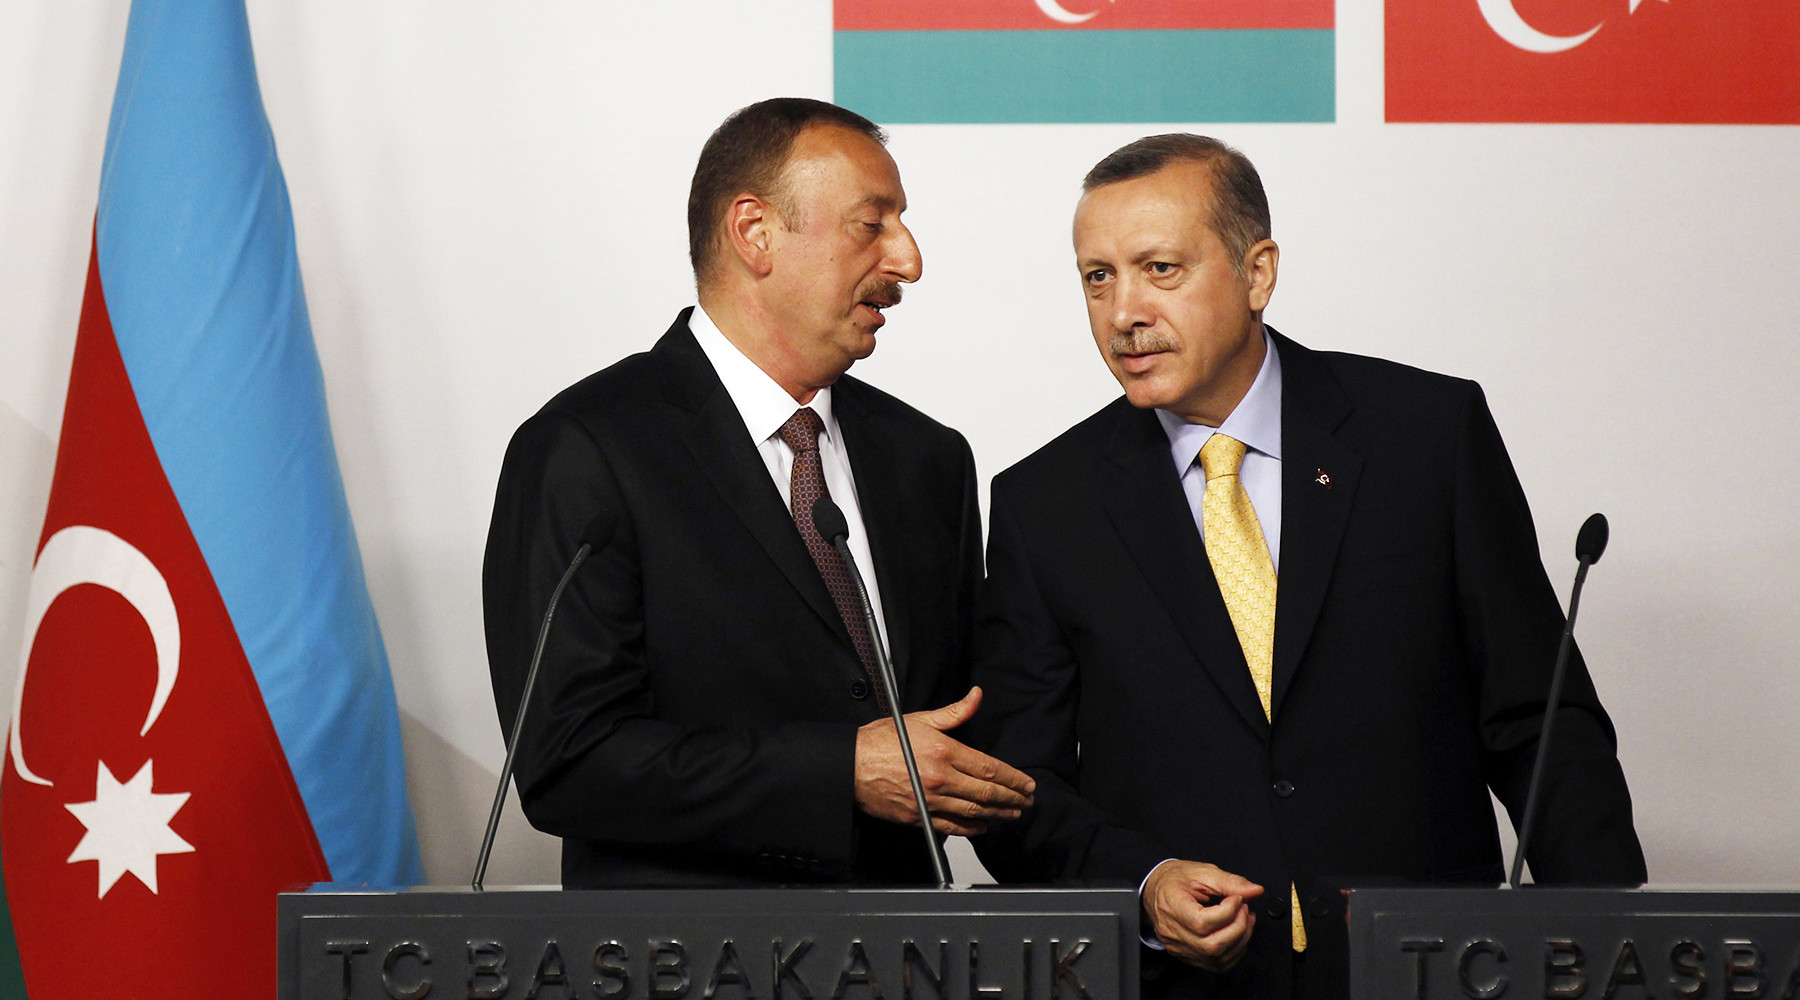 Политолог: Анкара зависит от Баку гораздо сильнее, чем Баку от Анкары